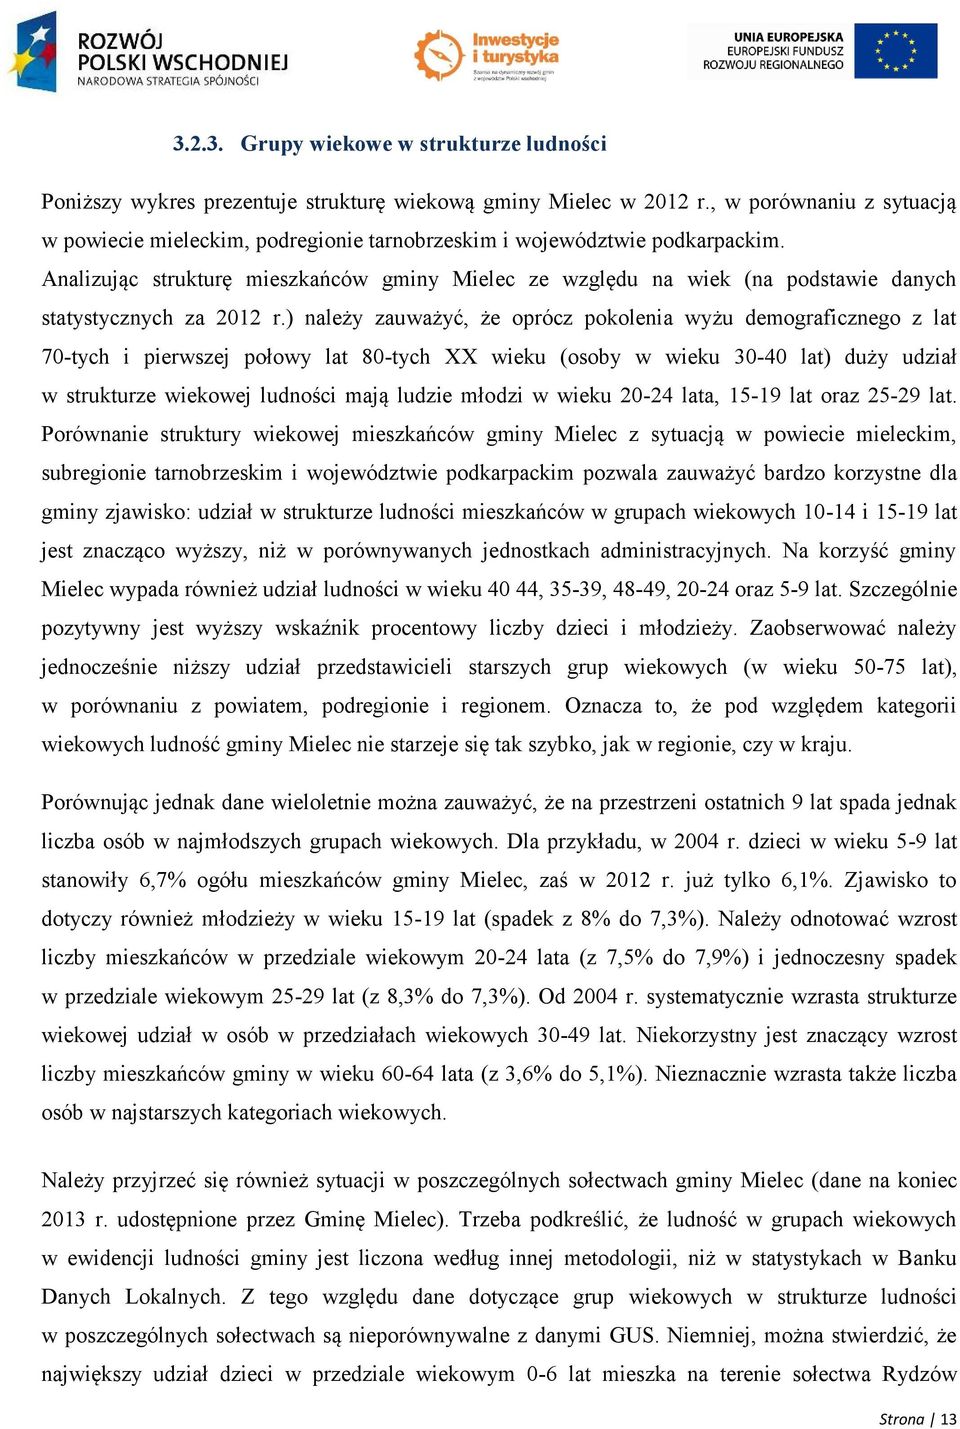 Analizując strukturę mieszkańców gminy Mielec ze względu na wiek (na podstawie danych statystycznych za 2012 r.